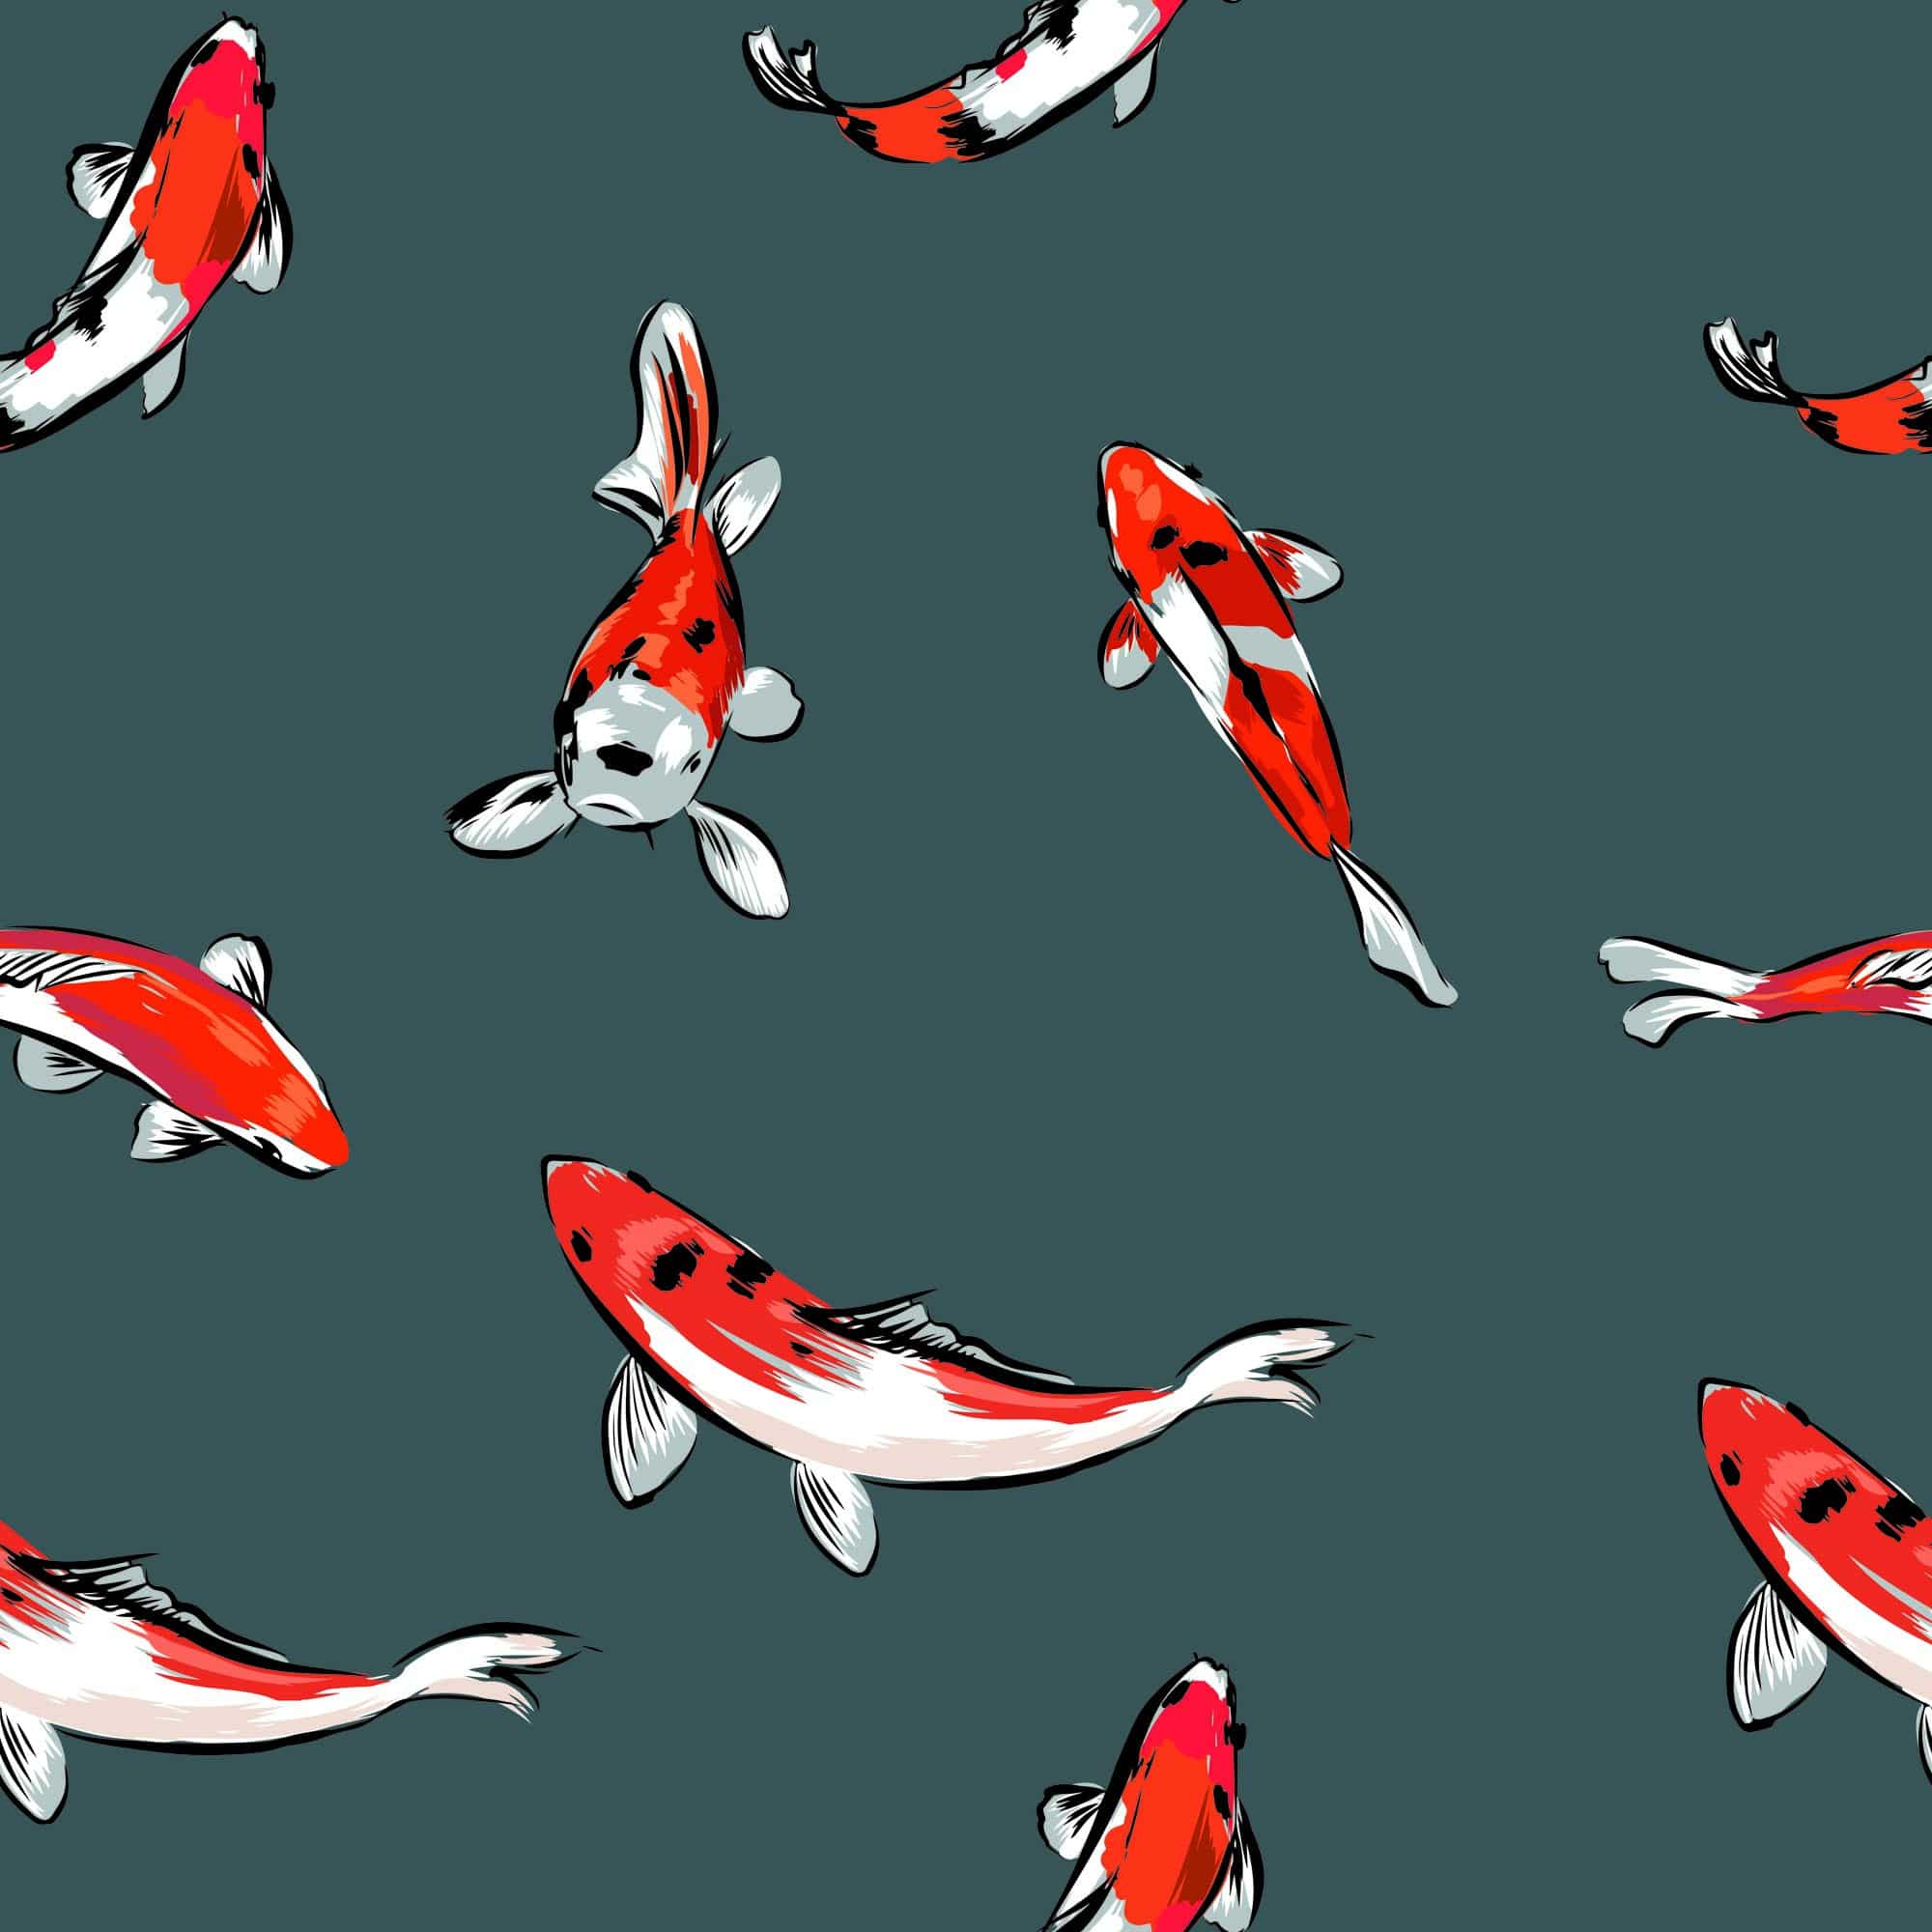  Fisch Hintergrundbild 2000x2000. Koi Fish Wallpaper And Stick Or Non Pasted